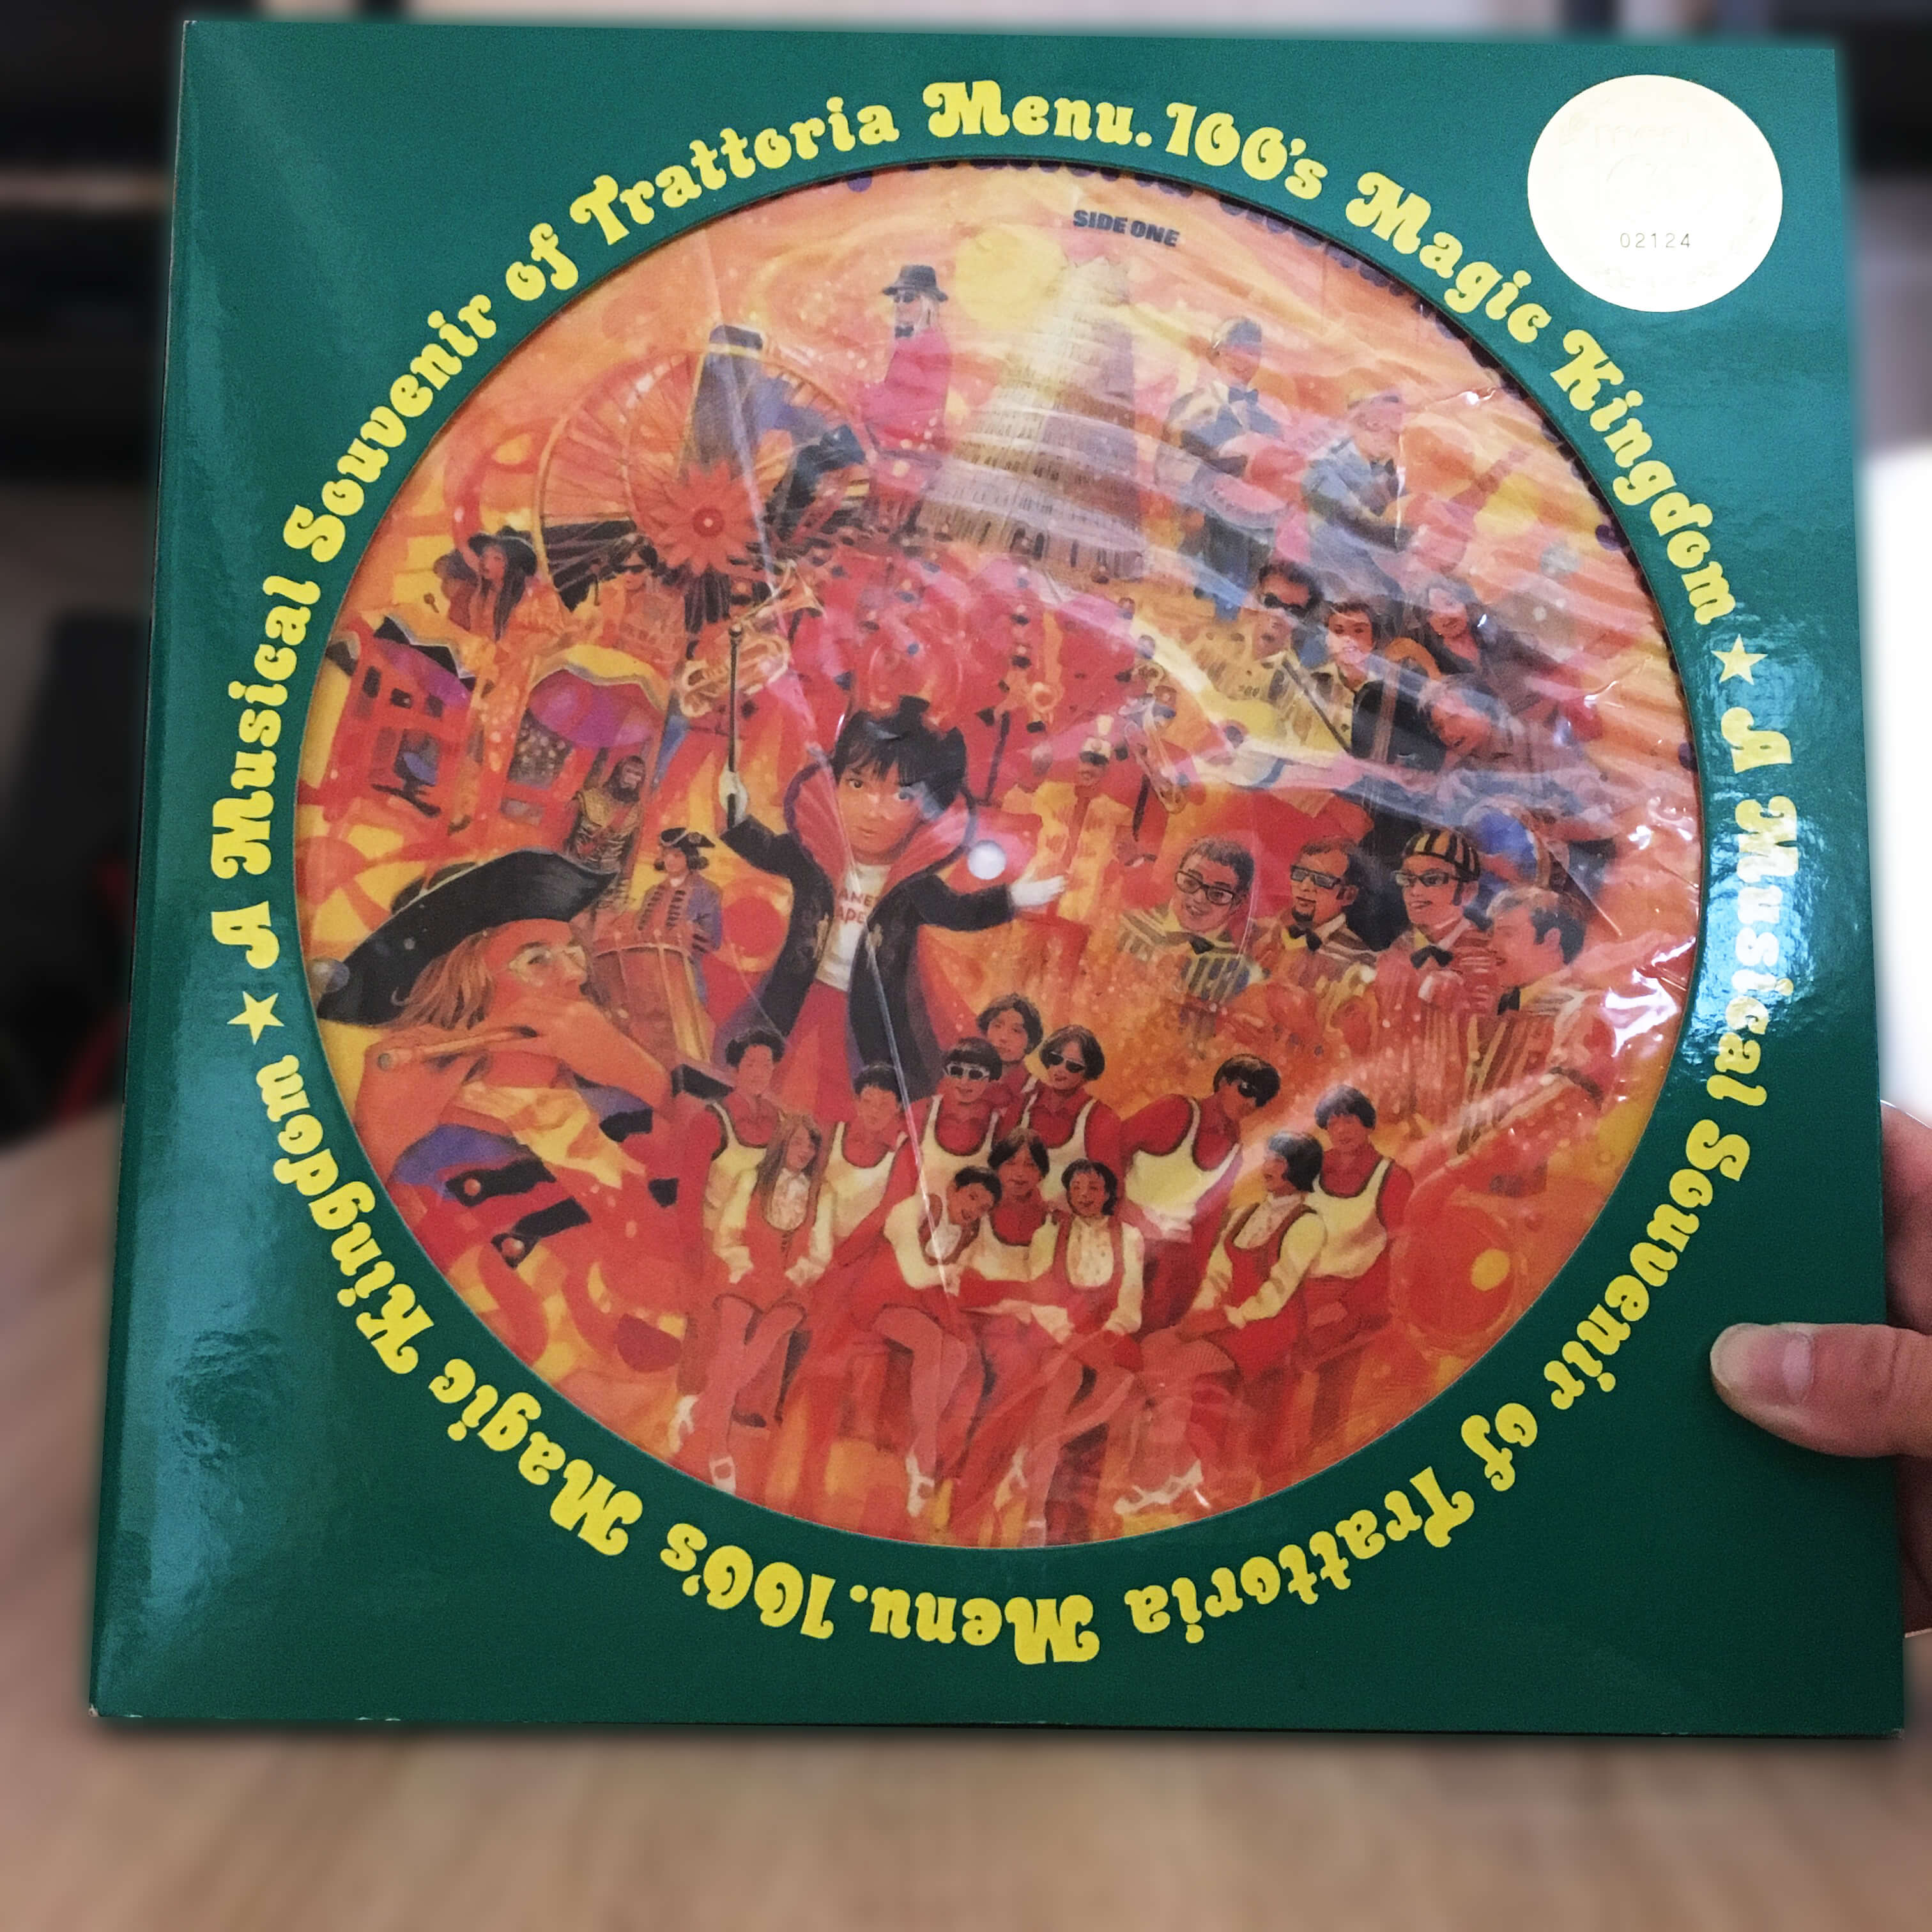 Trattoria Menu.100 – A Musical Souvenir of Trattoria Menu.100’s Magic Kingdom